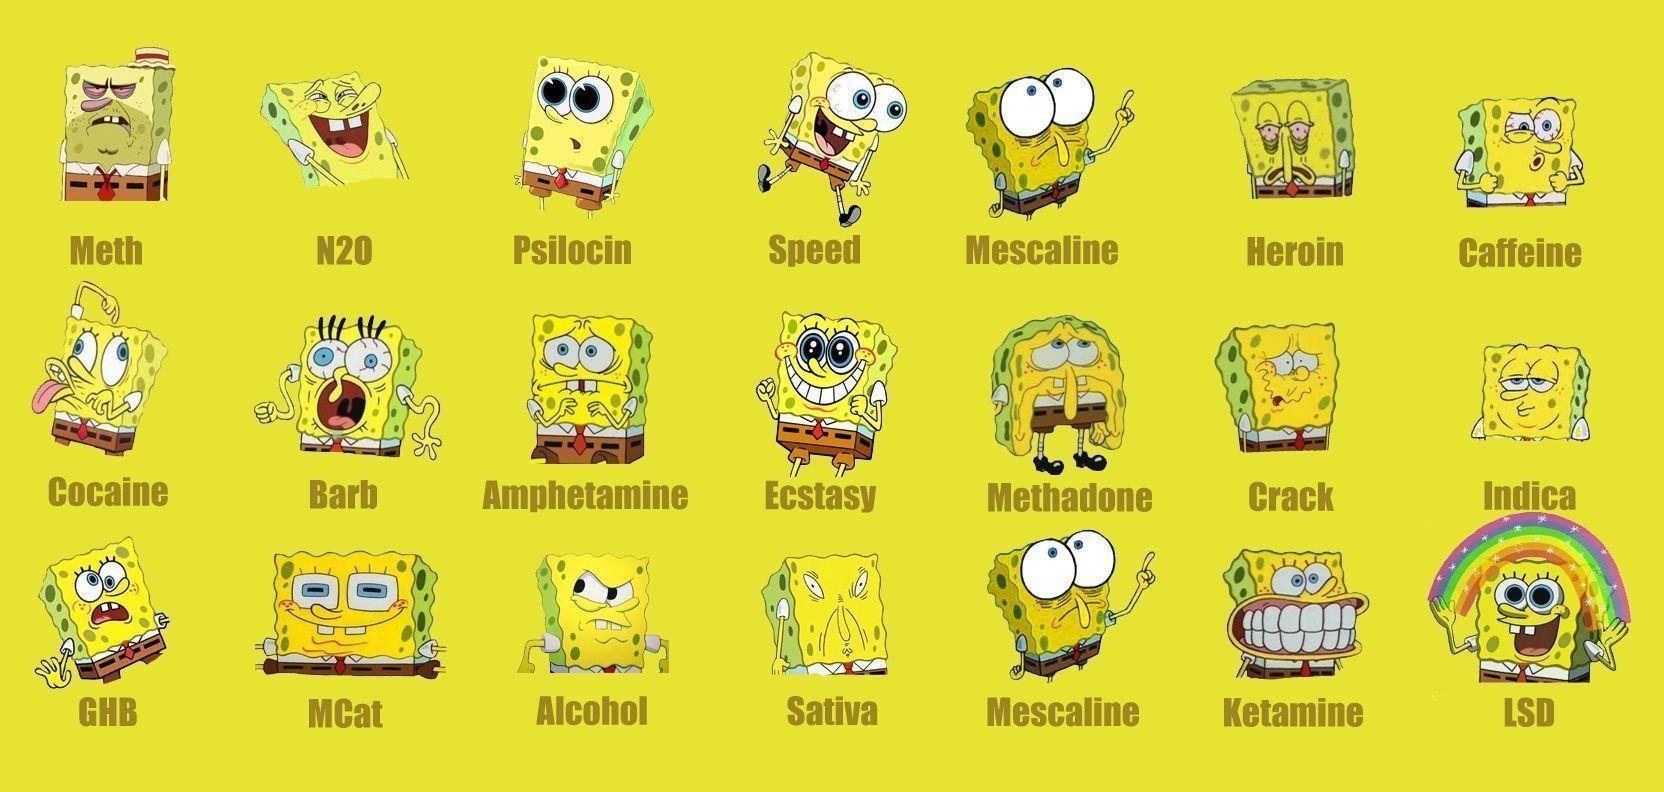 Spongebob Drug in Funny